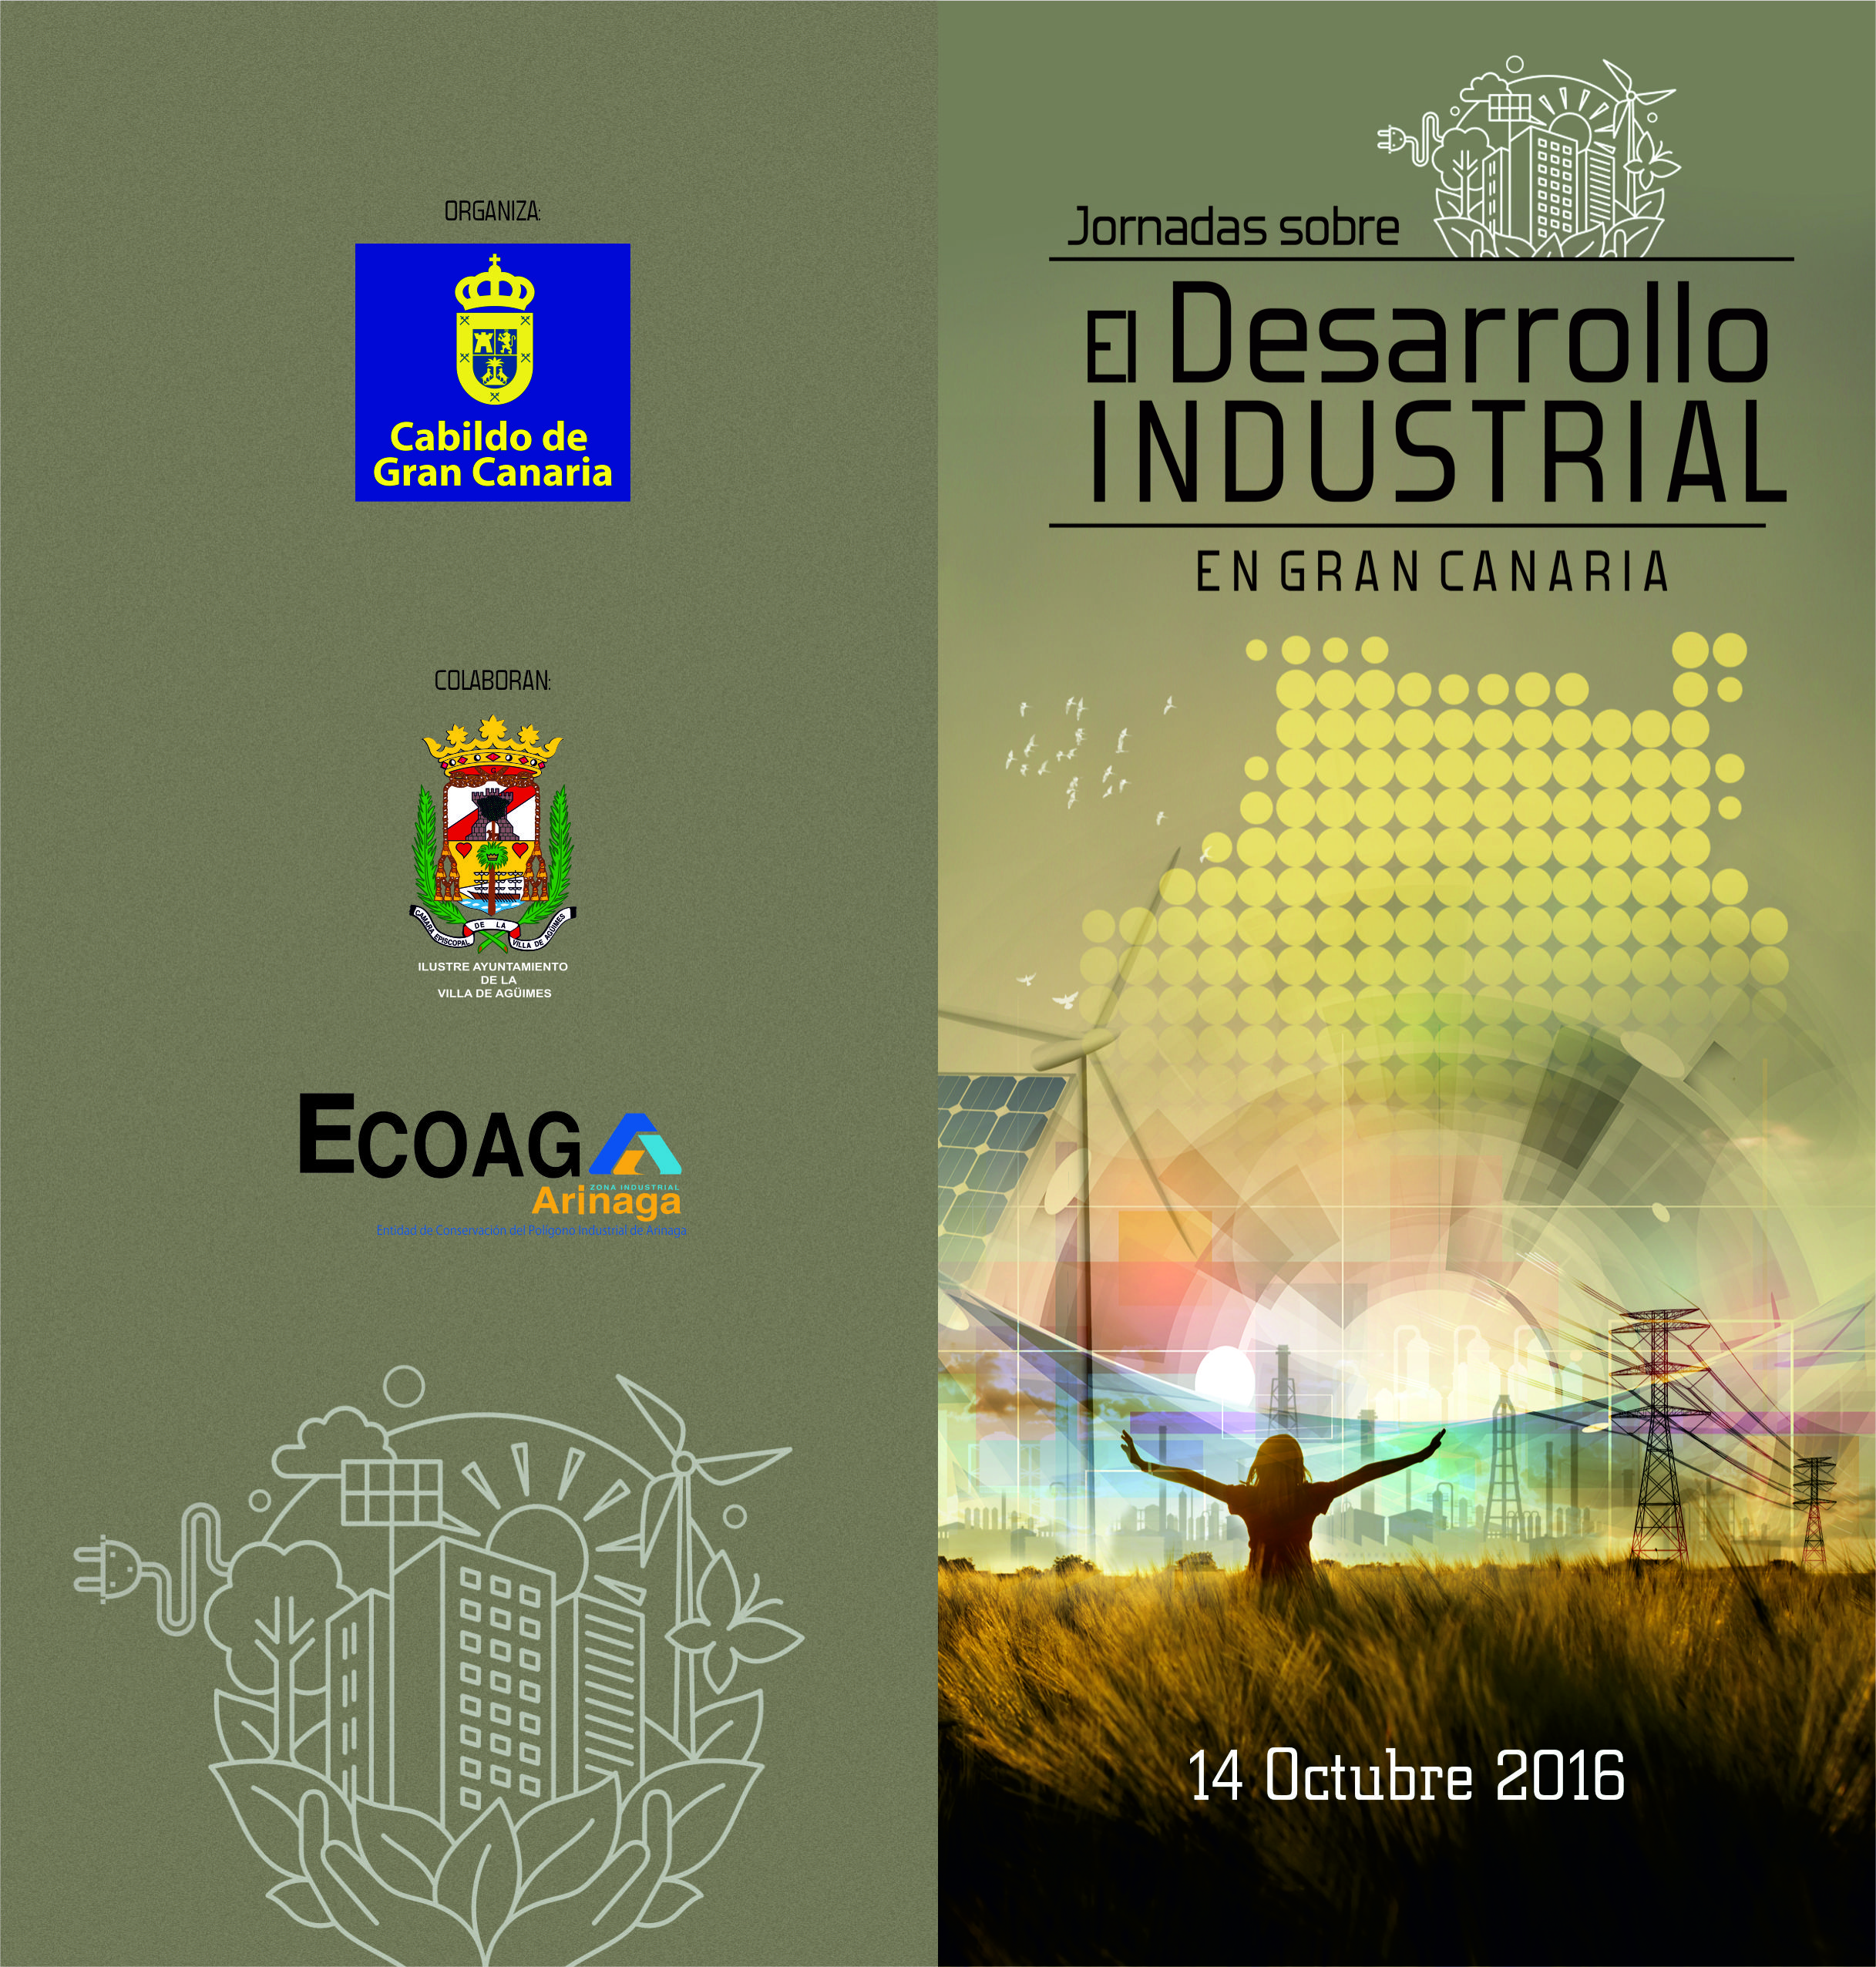 Jornadas sobre el Desarrollo Industrial en Gran Canaria 